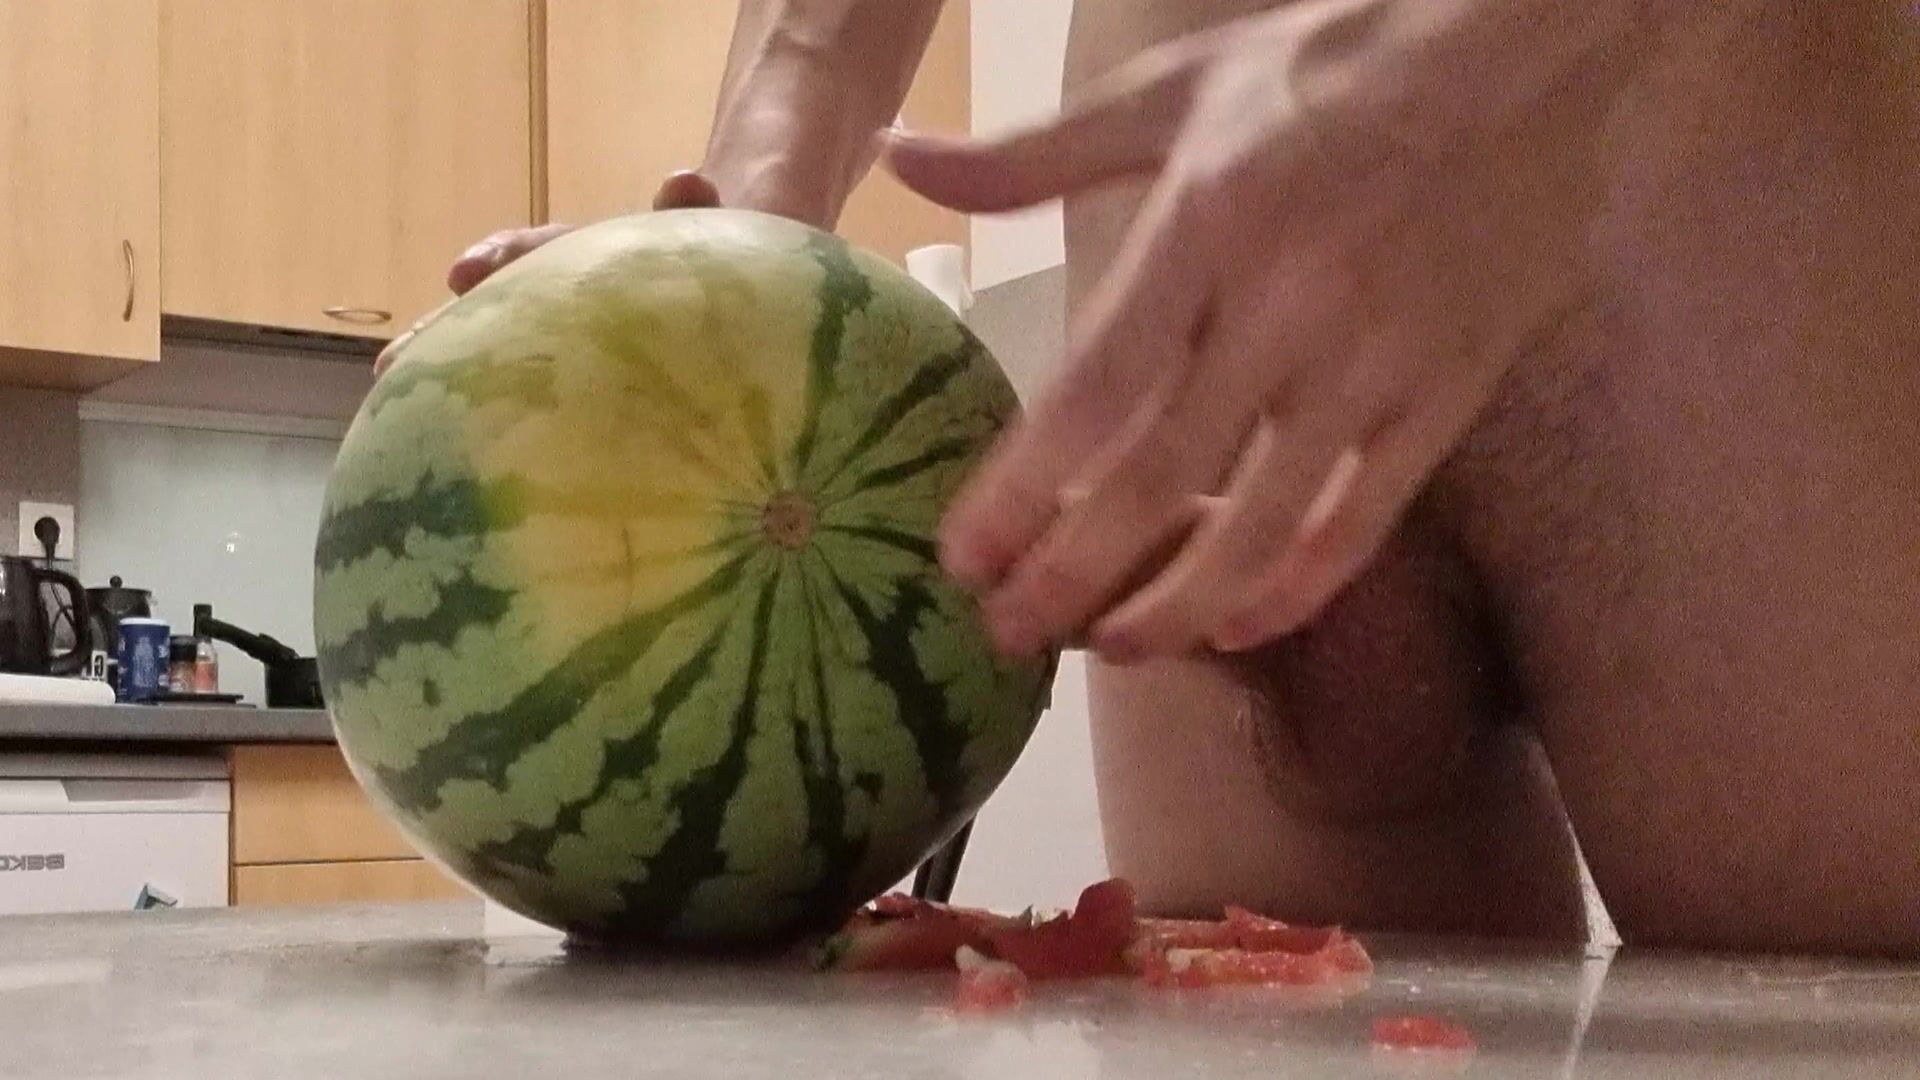 i wanna fuck this watermelon... 😅